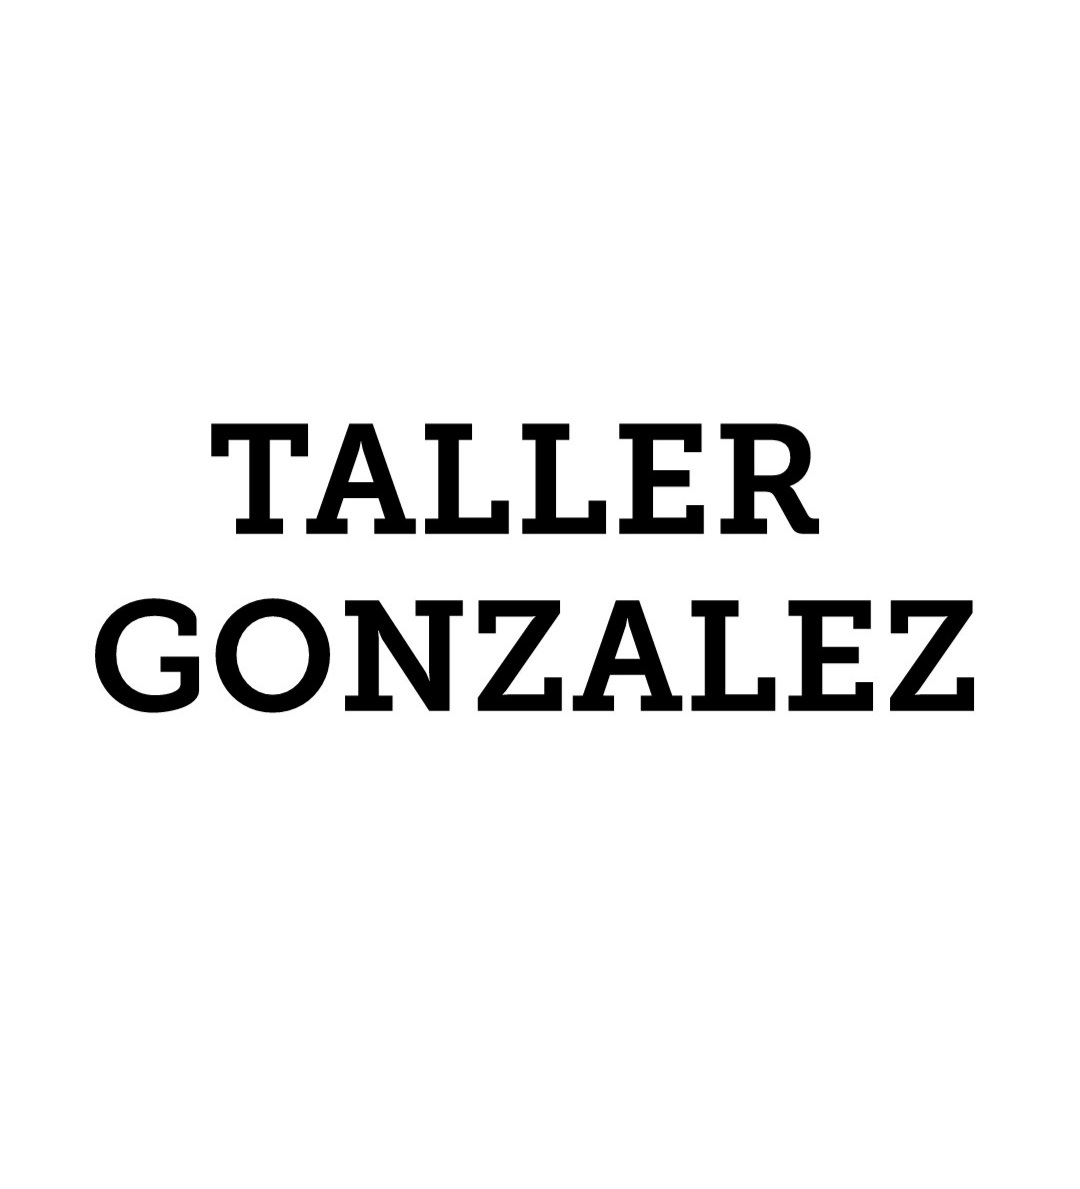 TALLER GONZALEZ